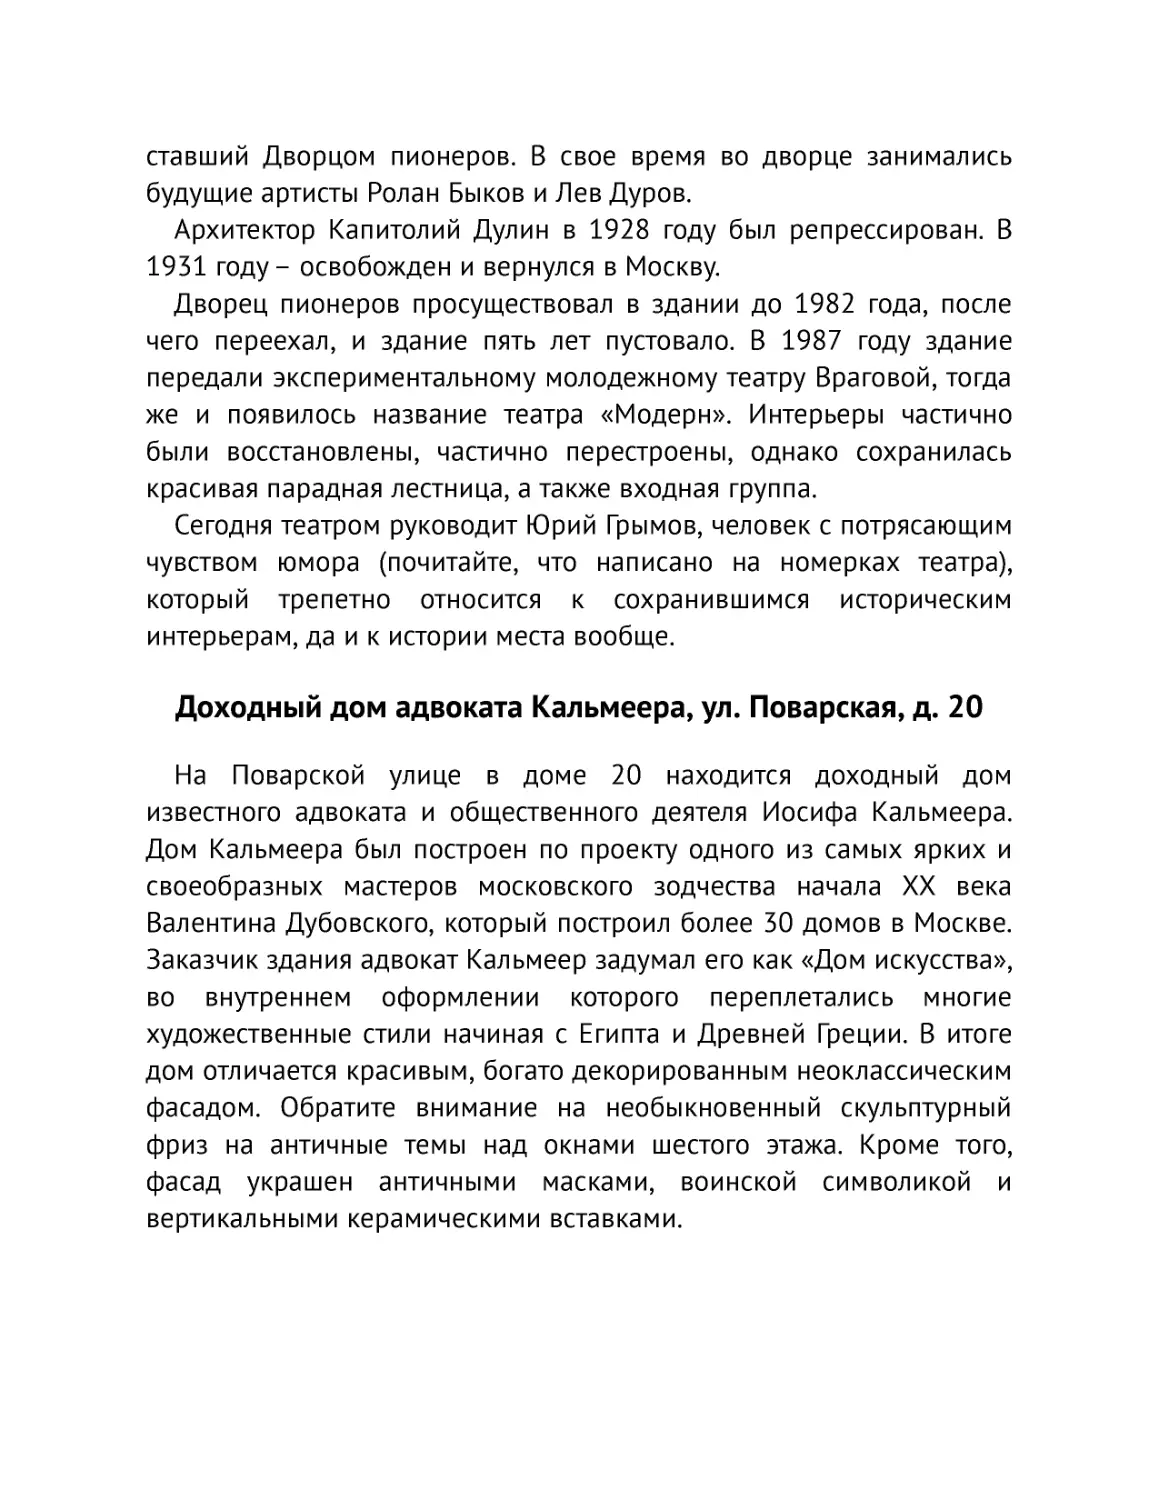 ﻿Доходный дом адвоката Кальмеера, ул. Поварская, д. 2